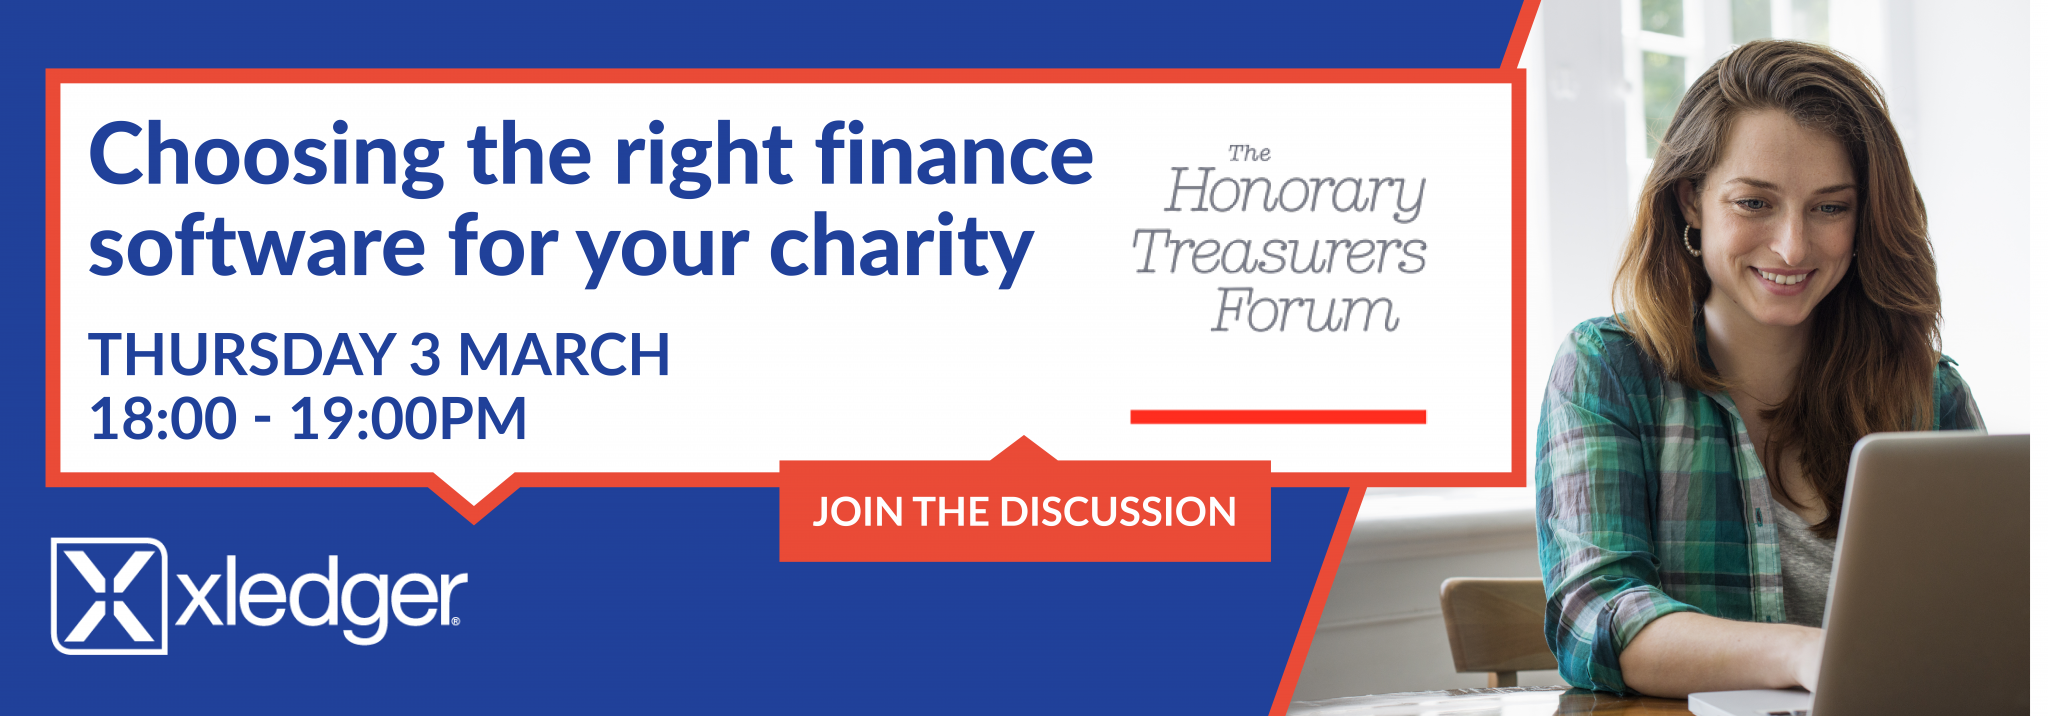 Honorary Treasurers Forum